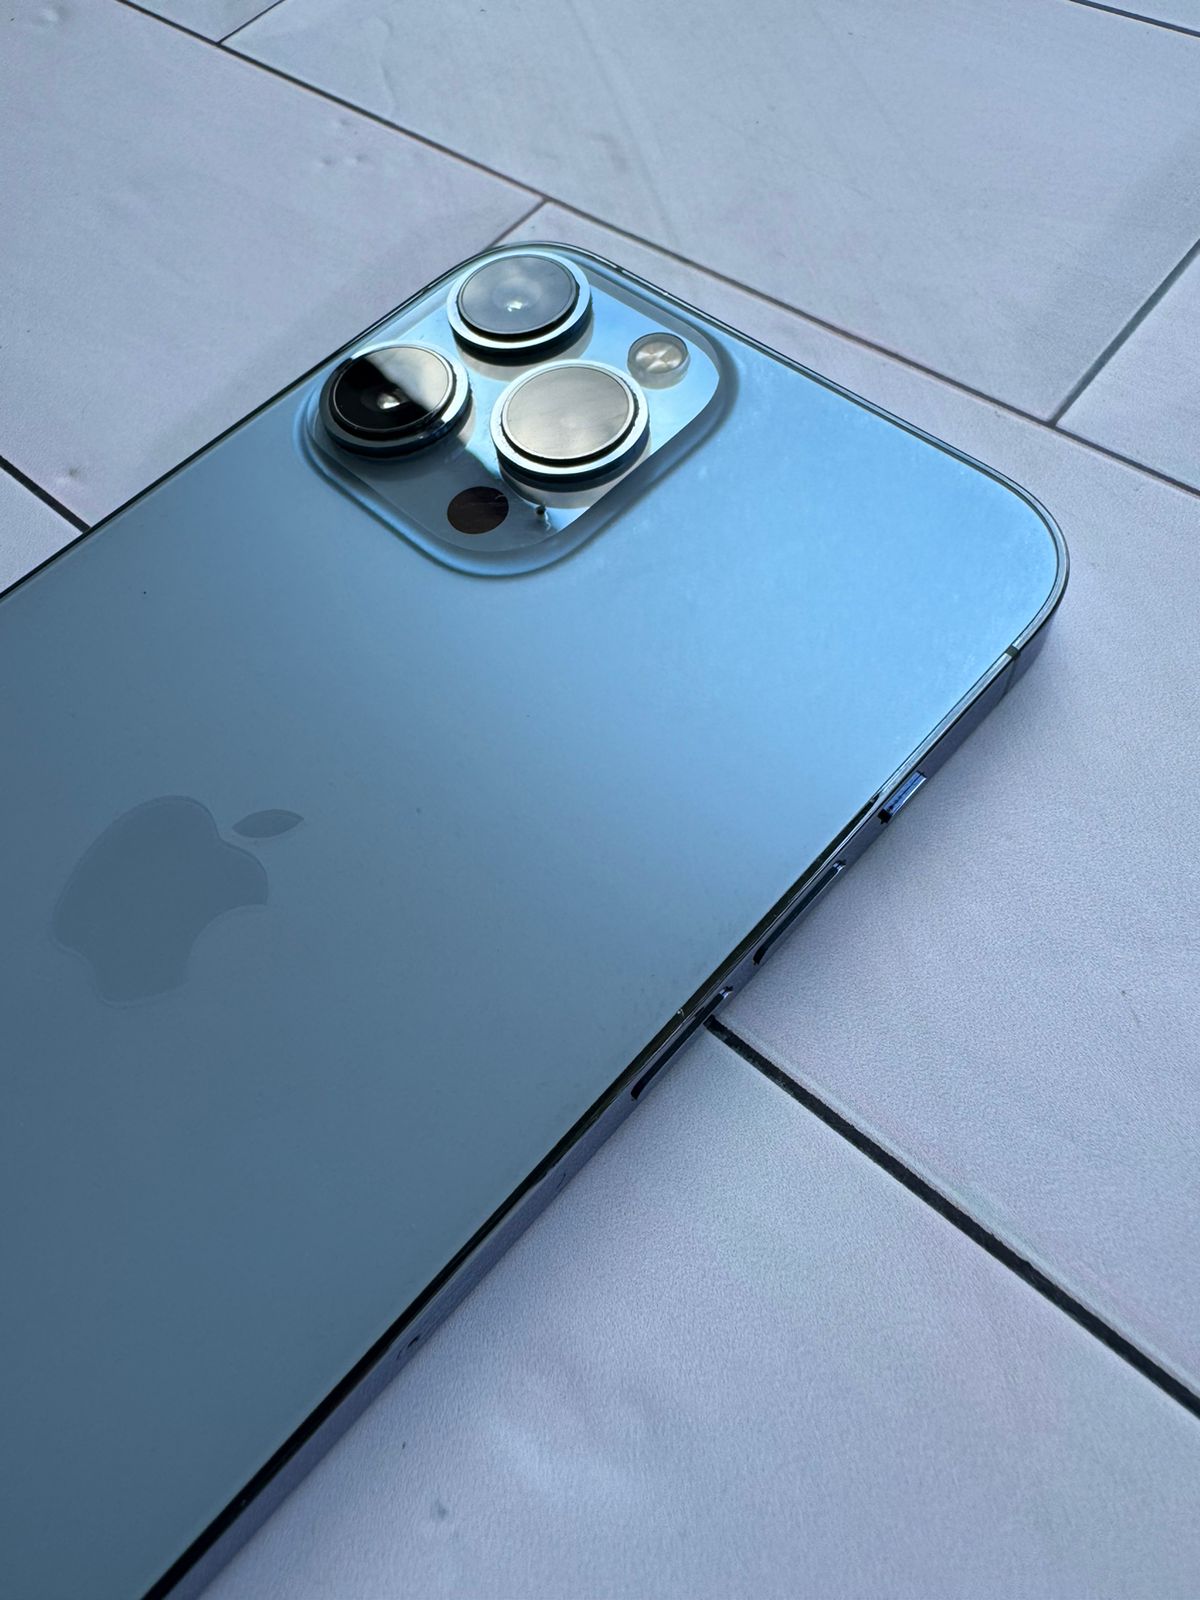 iPhone 13 Pro Max - Blue Sierra, 128GB